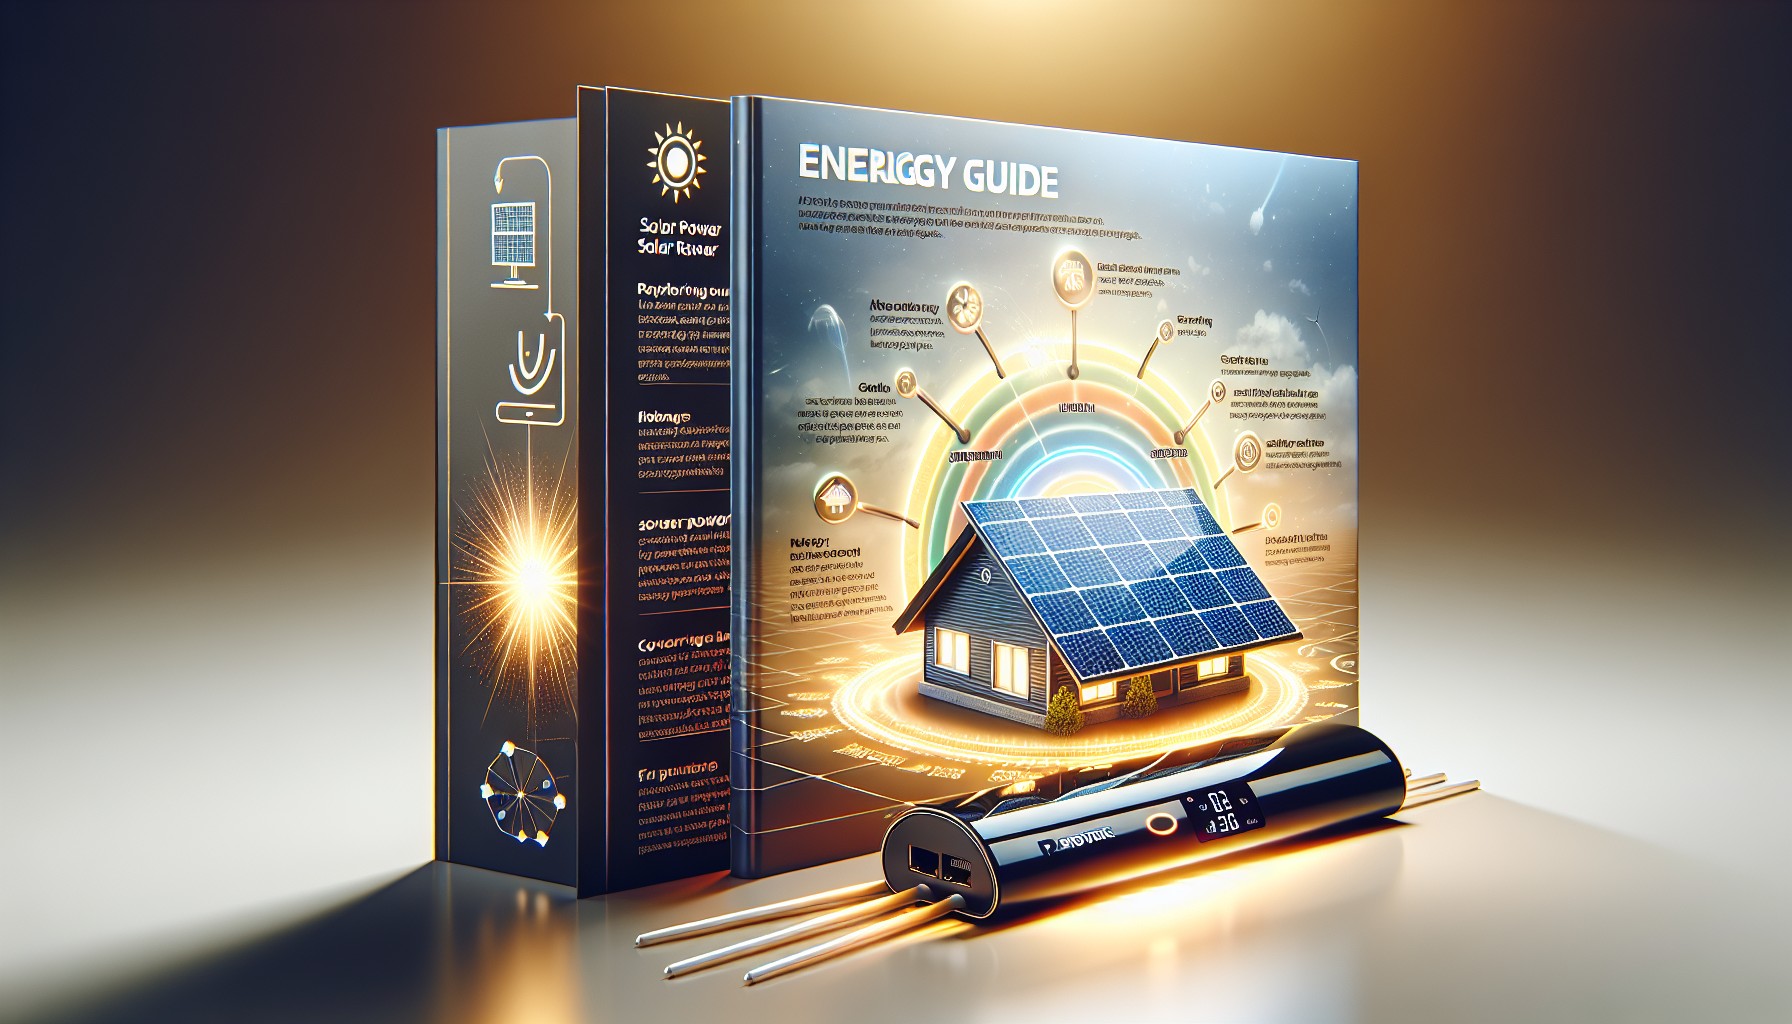 pv mate routeur solaire votre guide energetique